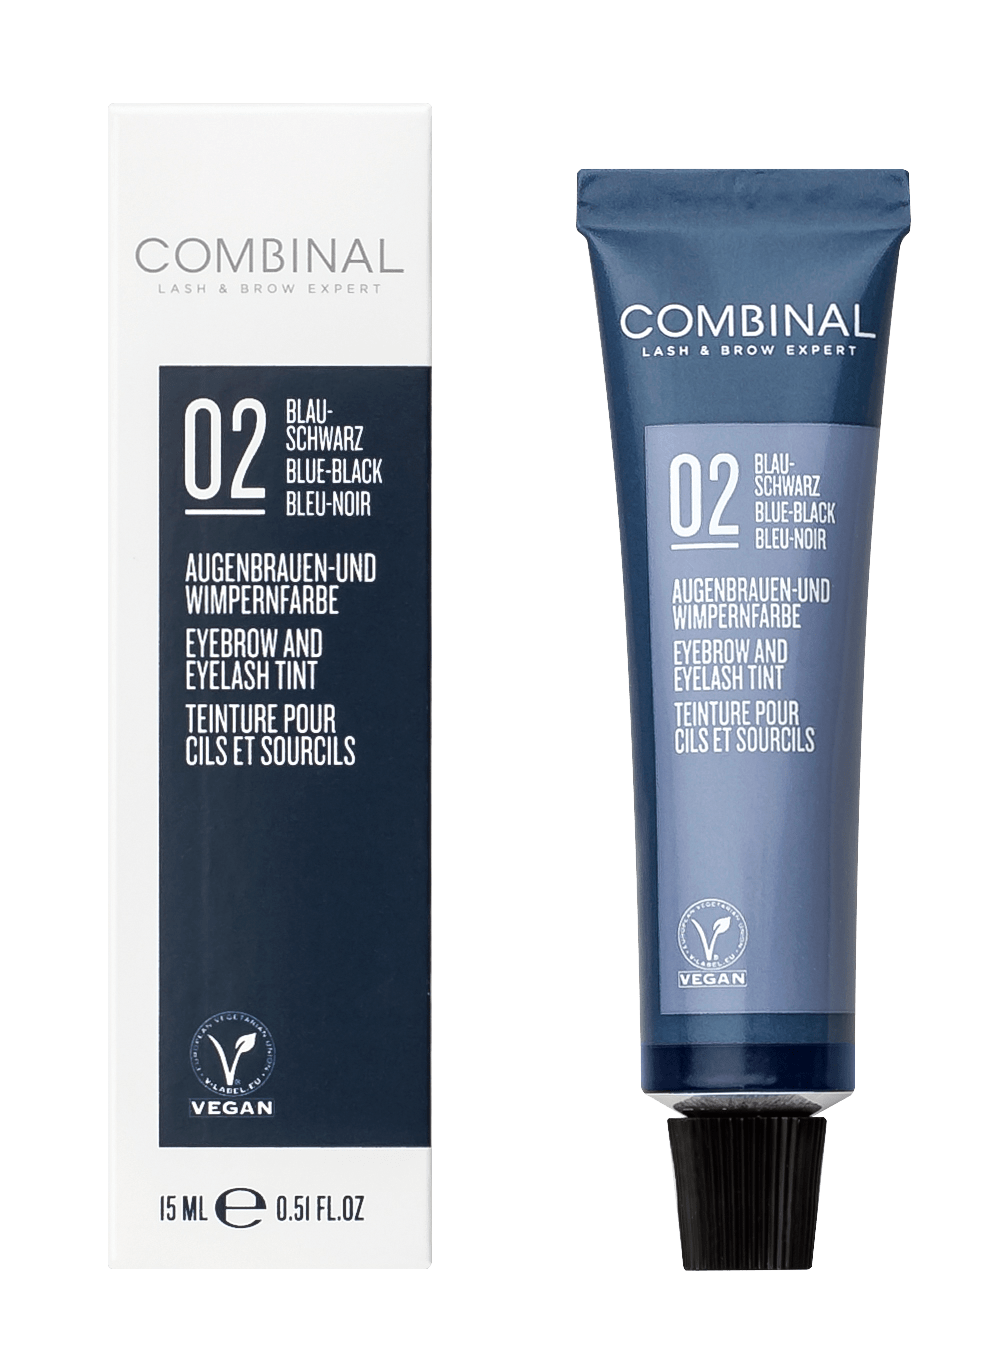 COMBINAL - Wimpernfarbe, 15 ml in blauschwarz